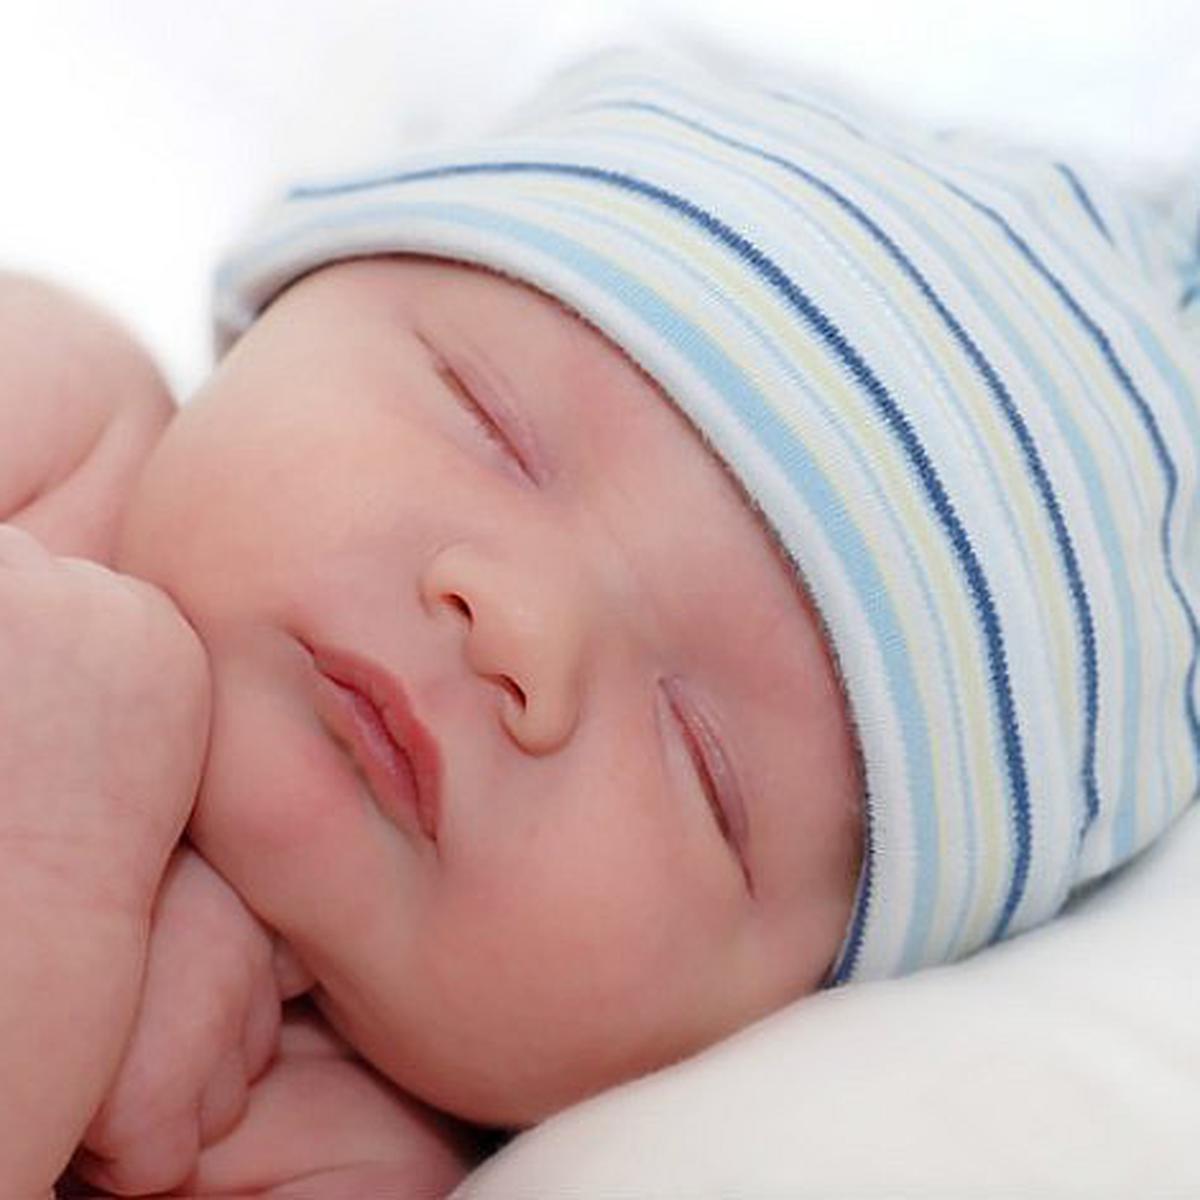 Subir y bajar Marketing de motores de búsqueda Muy lejos Por qué sueño con bebés? Significado de los sueños con bebés | MUJER | OJO